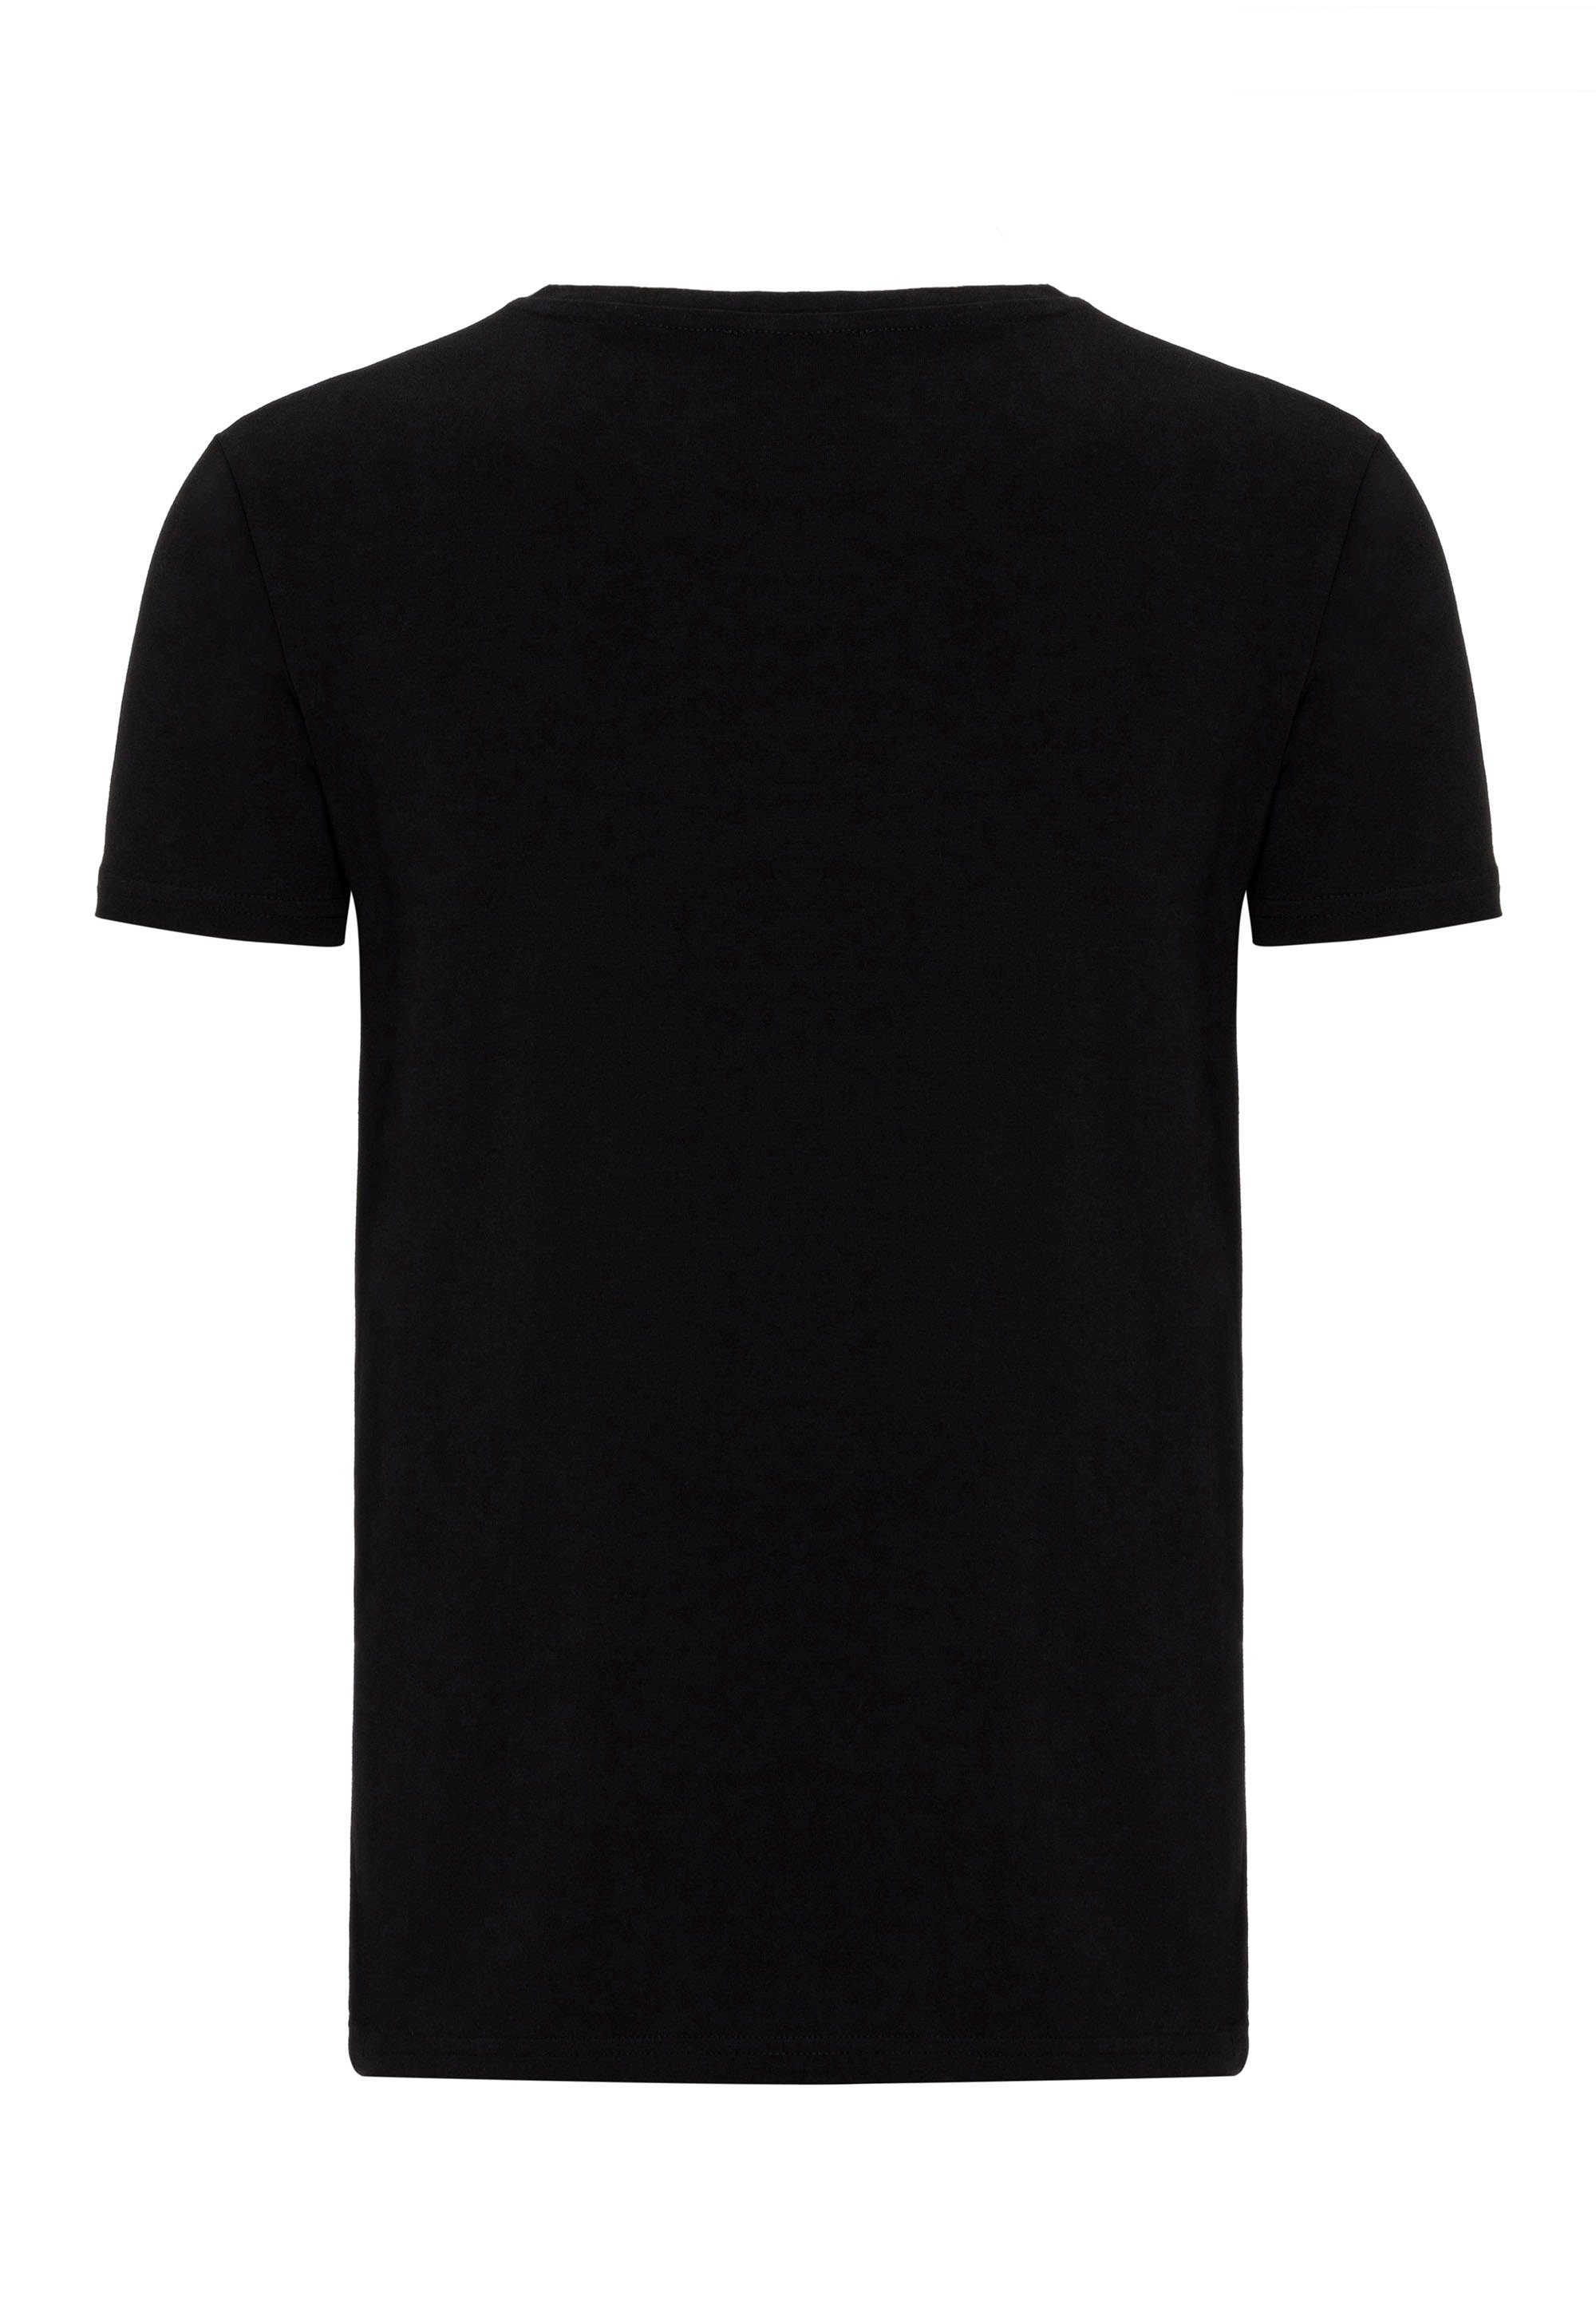 Logopatch Waco RedBridge dezentem schwarz T-Shirt mit